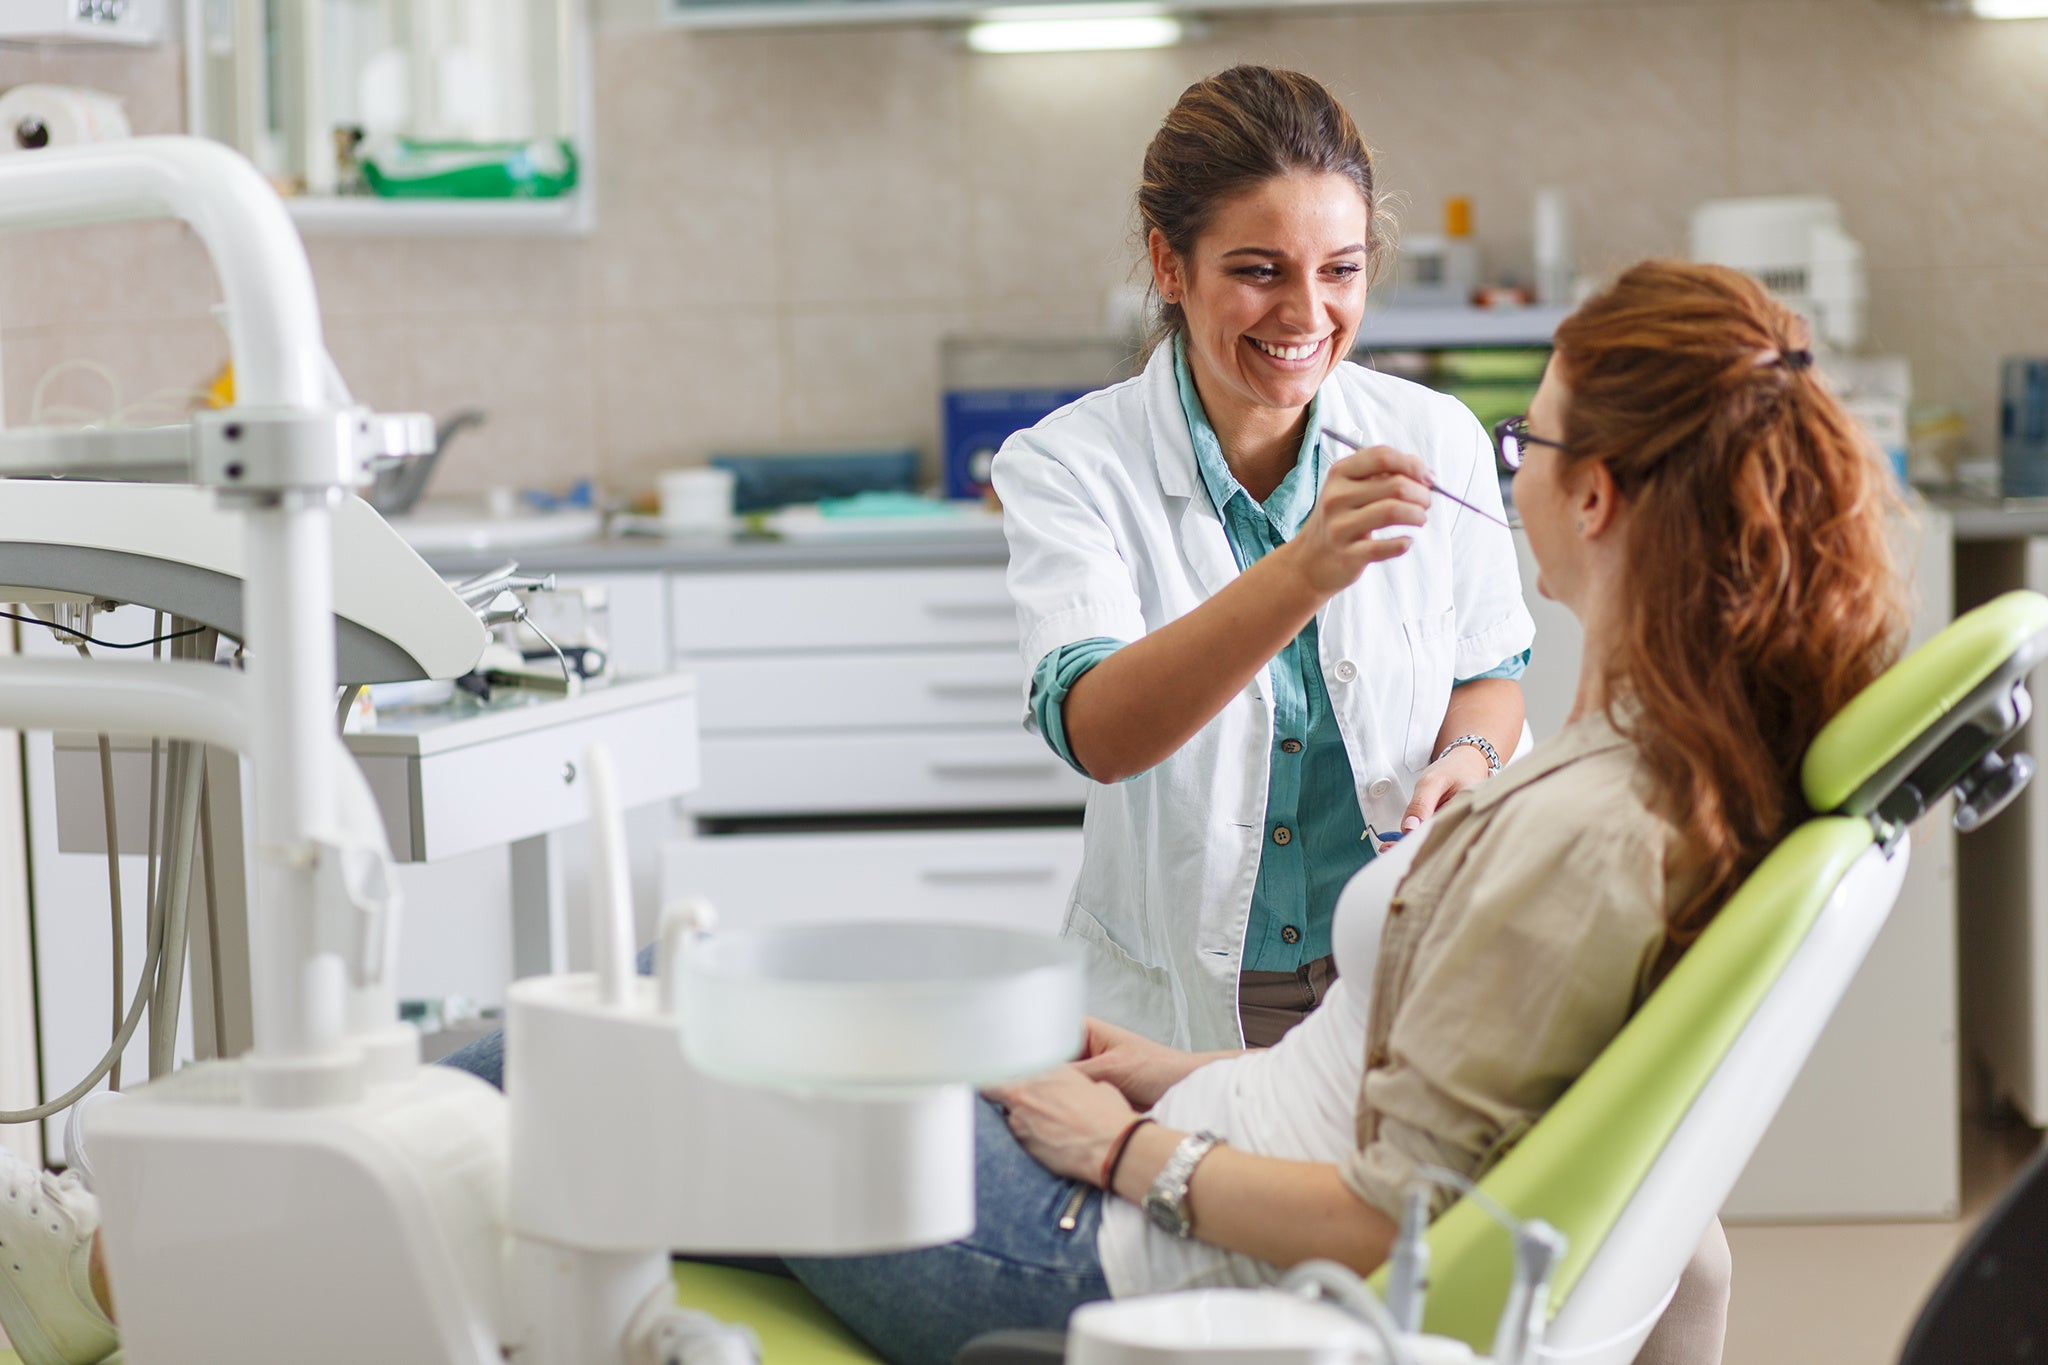 Waarom sterke communicatieve vaardigheden essentieel zijn voor de tandheelkundige professionals van vandaag